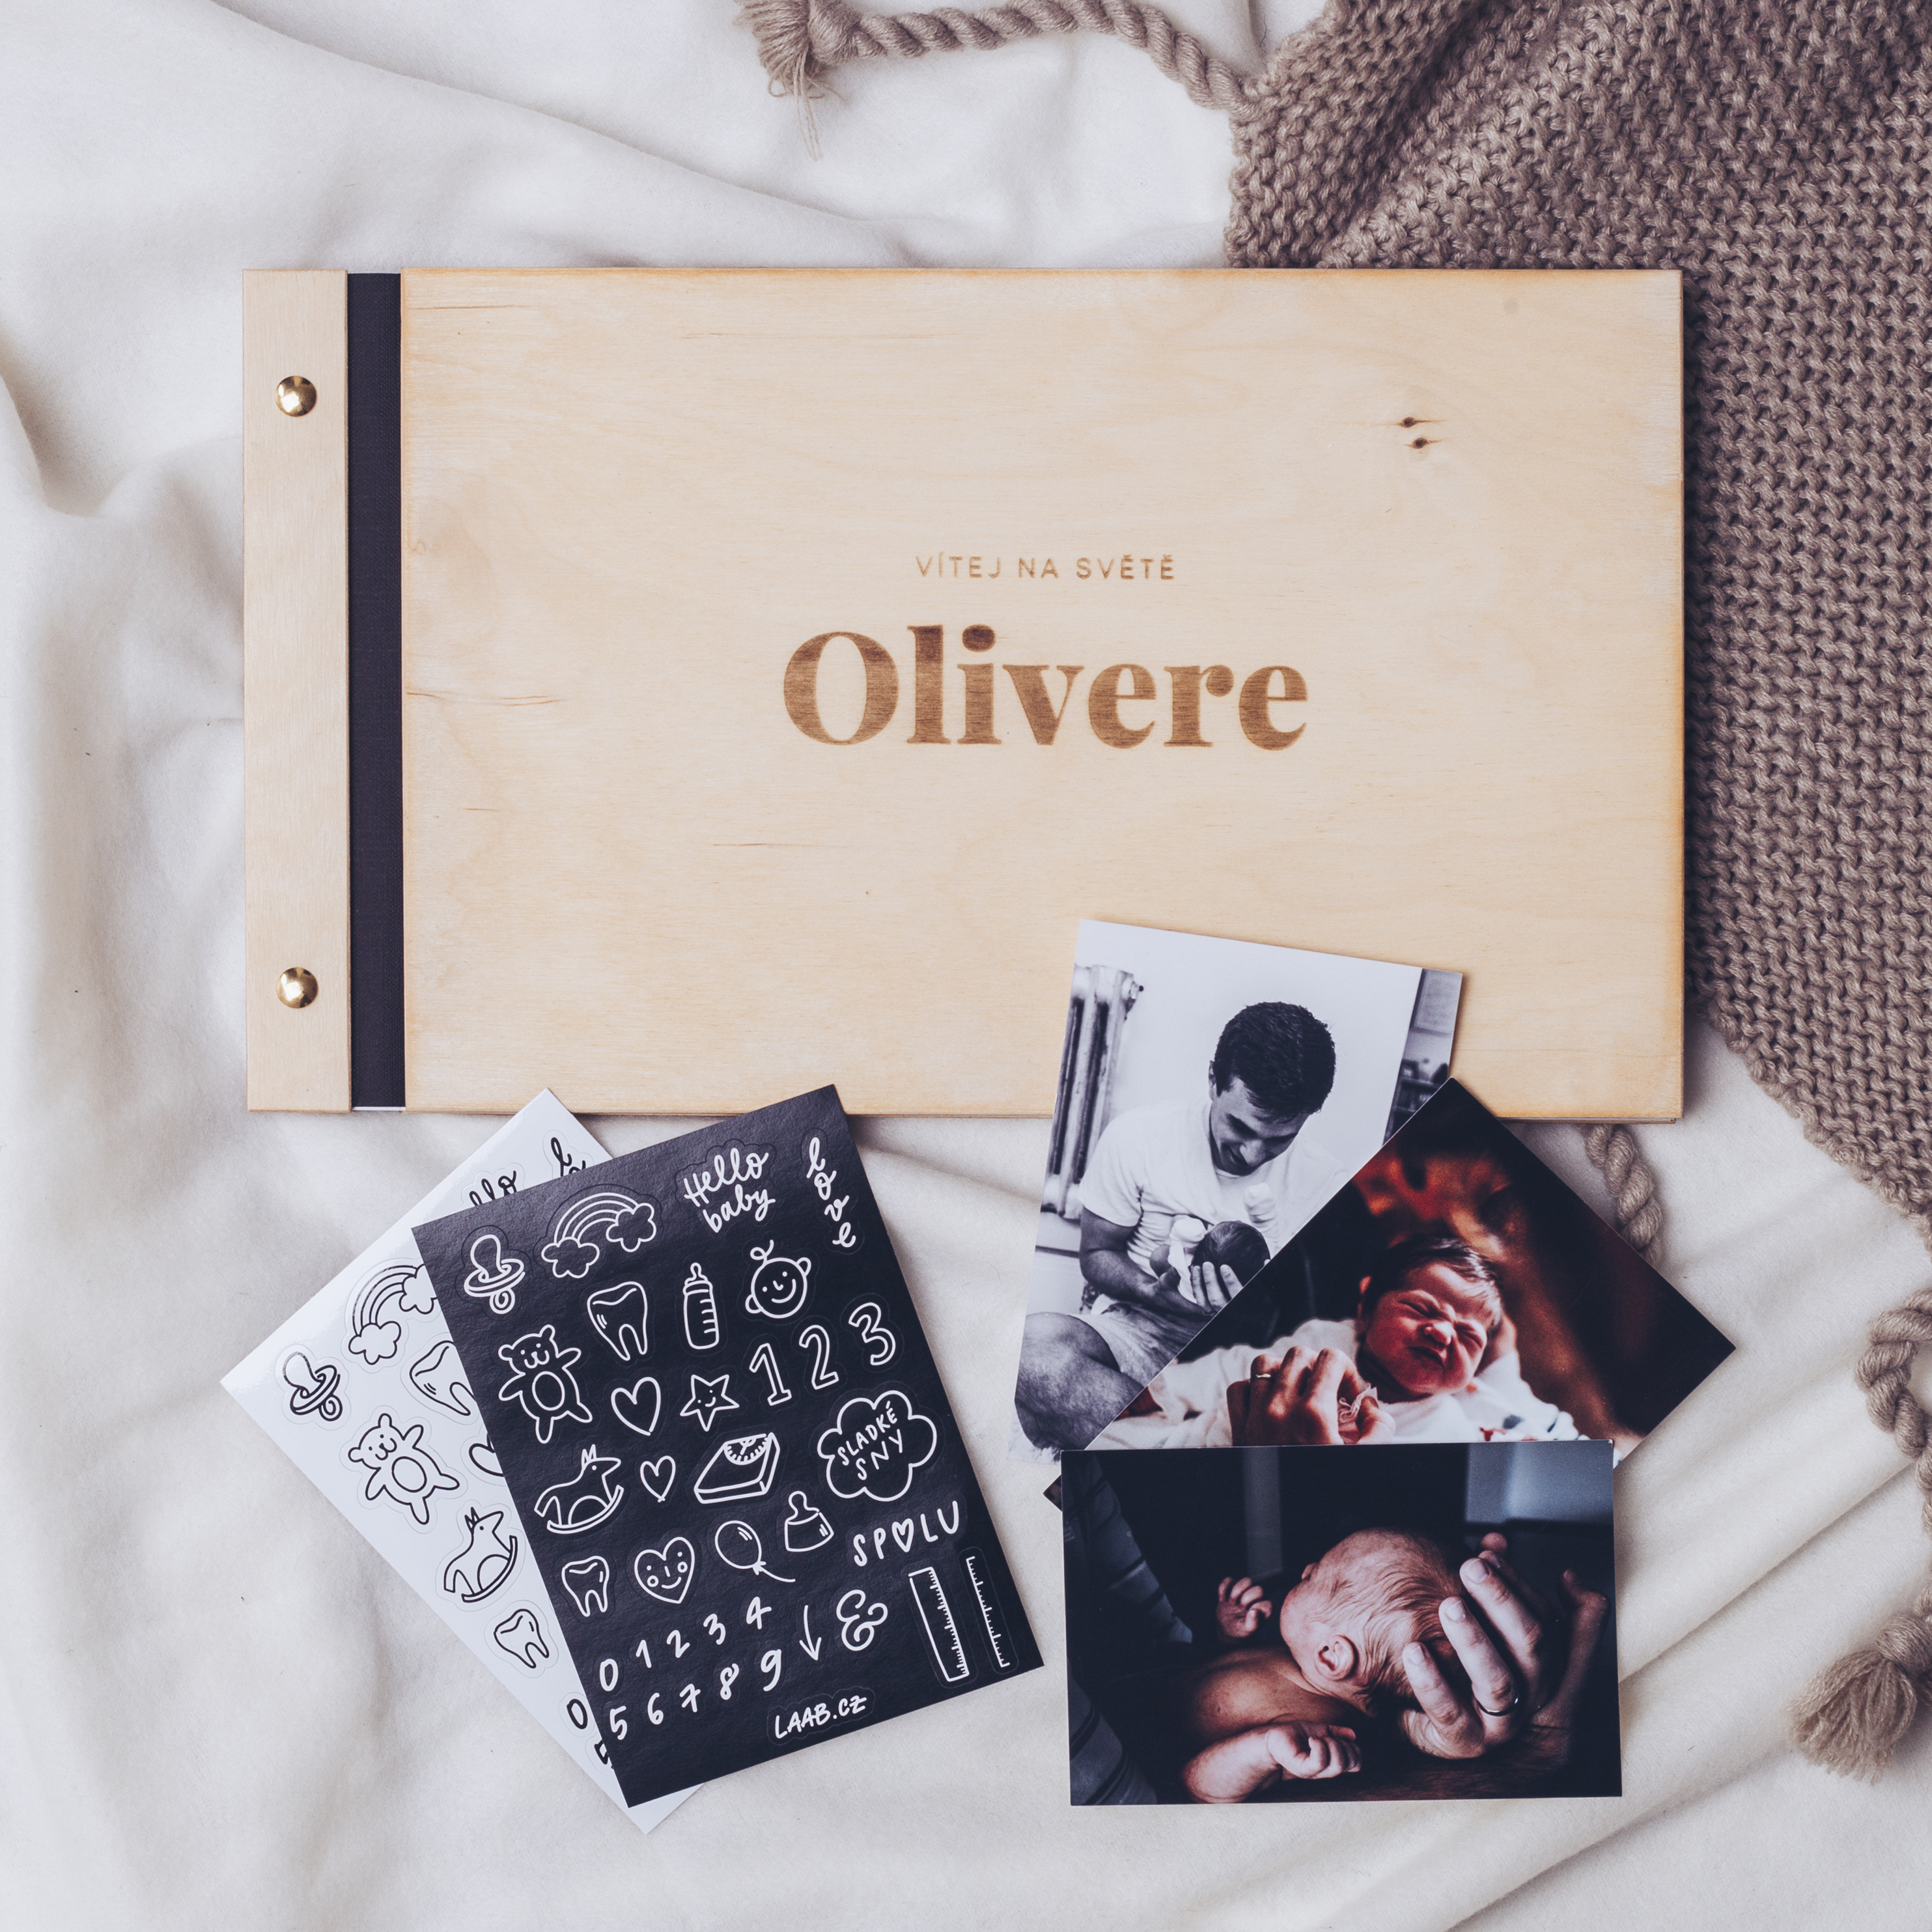 dřevěné fotoalbum Oliver: FORMÁT FOTOALBA na šířku, POČET LISTŮ 25 s prokladovými listy, FORMÁT FOTOALBA na výšku, POČET LISTŮ 20, BARVA LISTŮ bílá